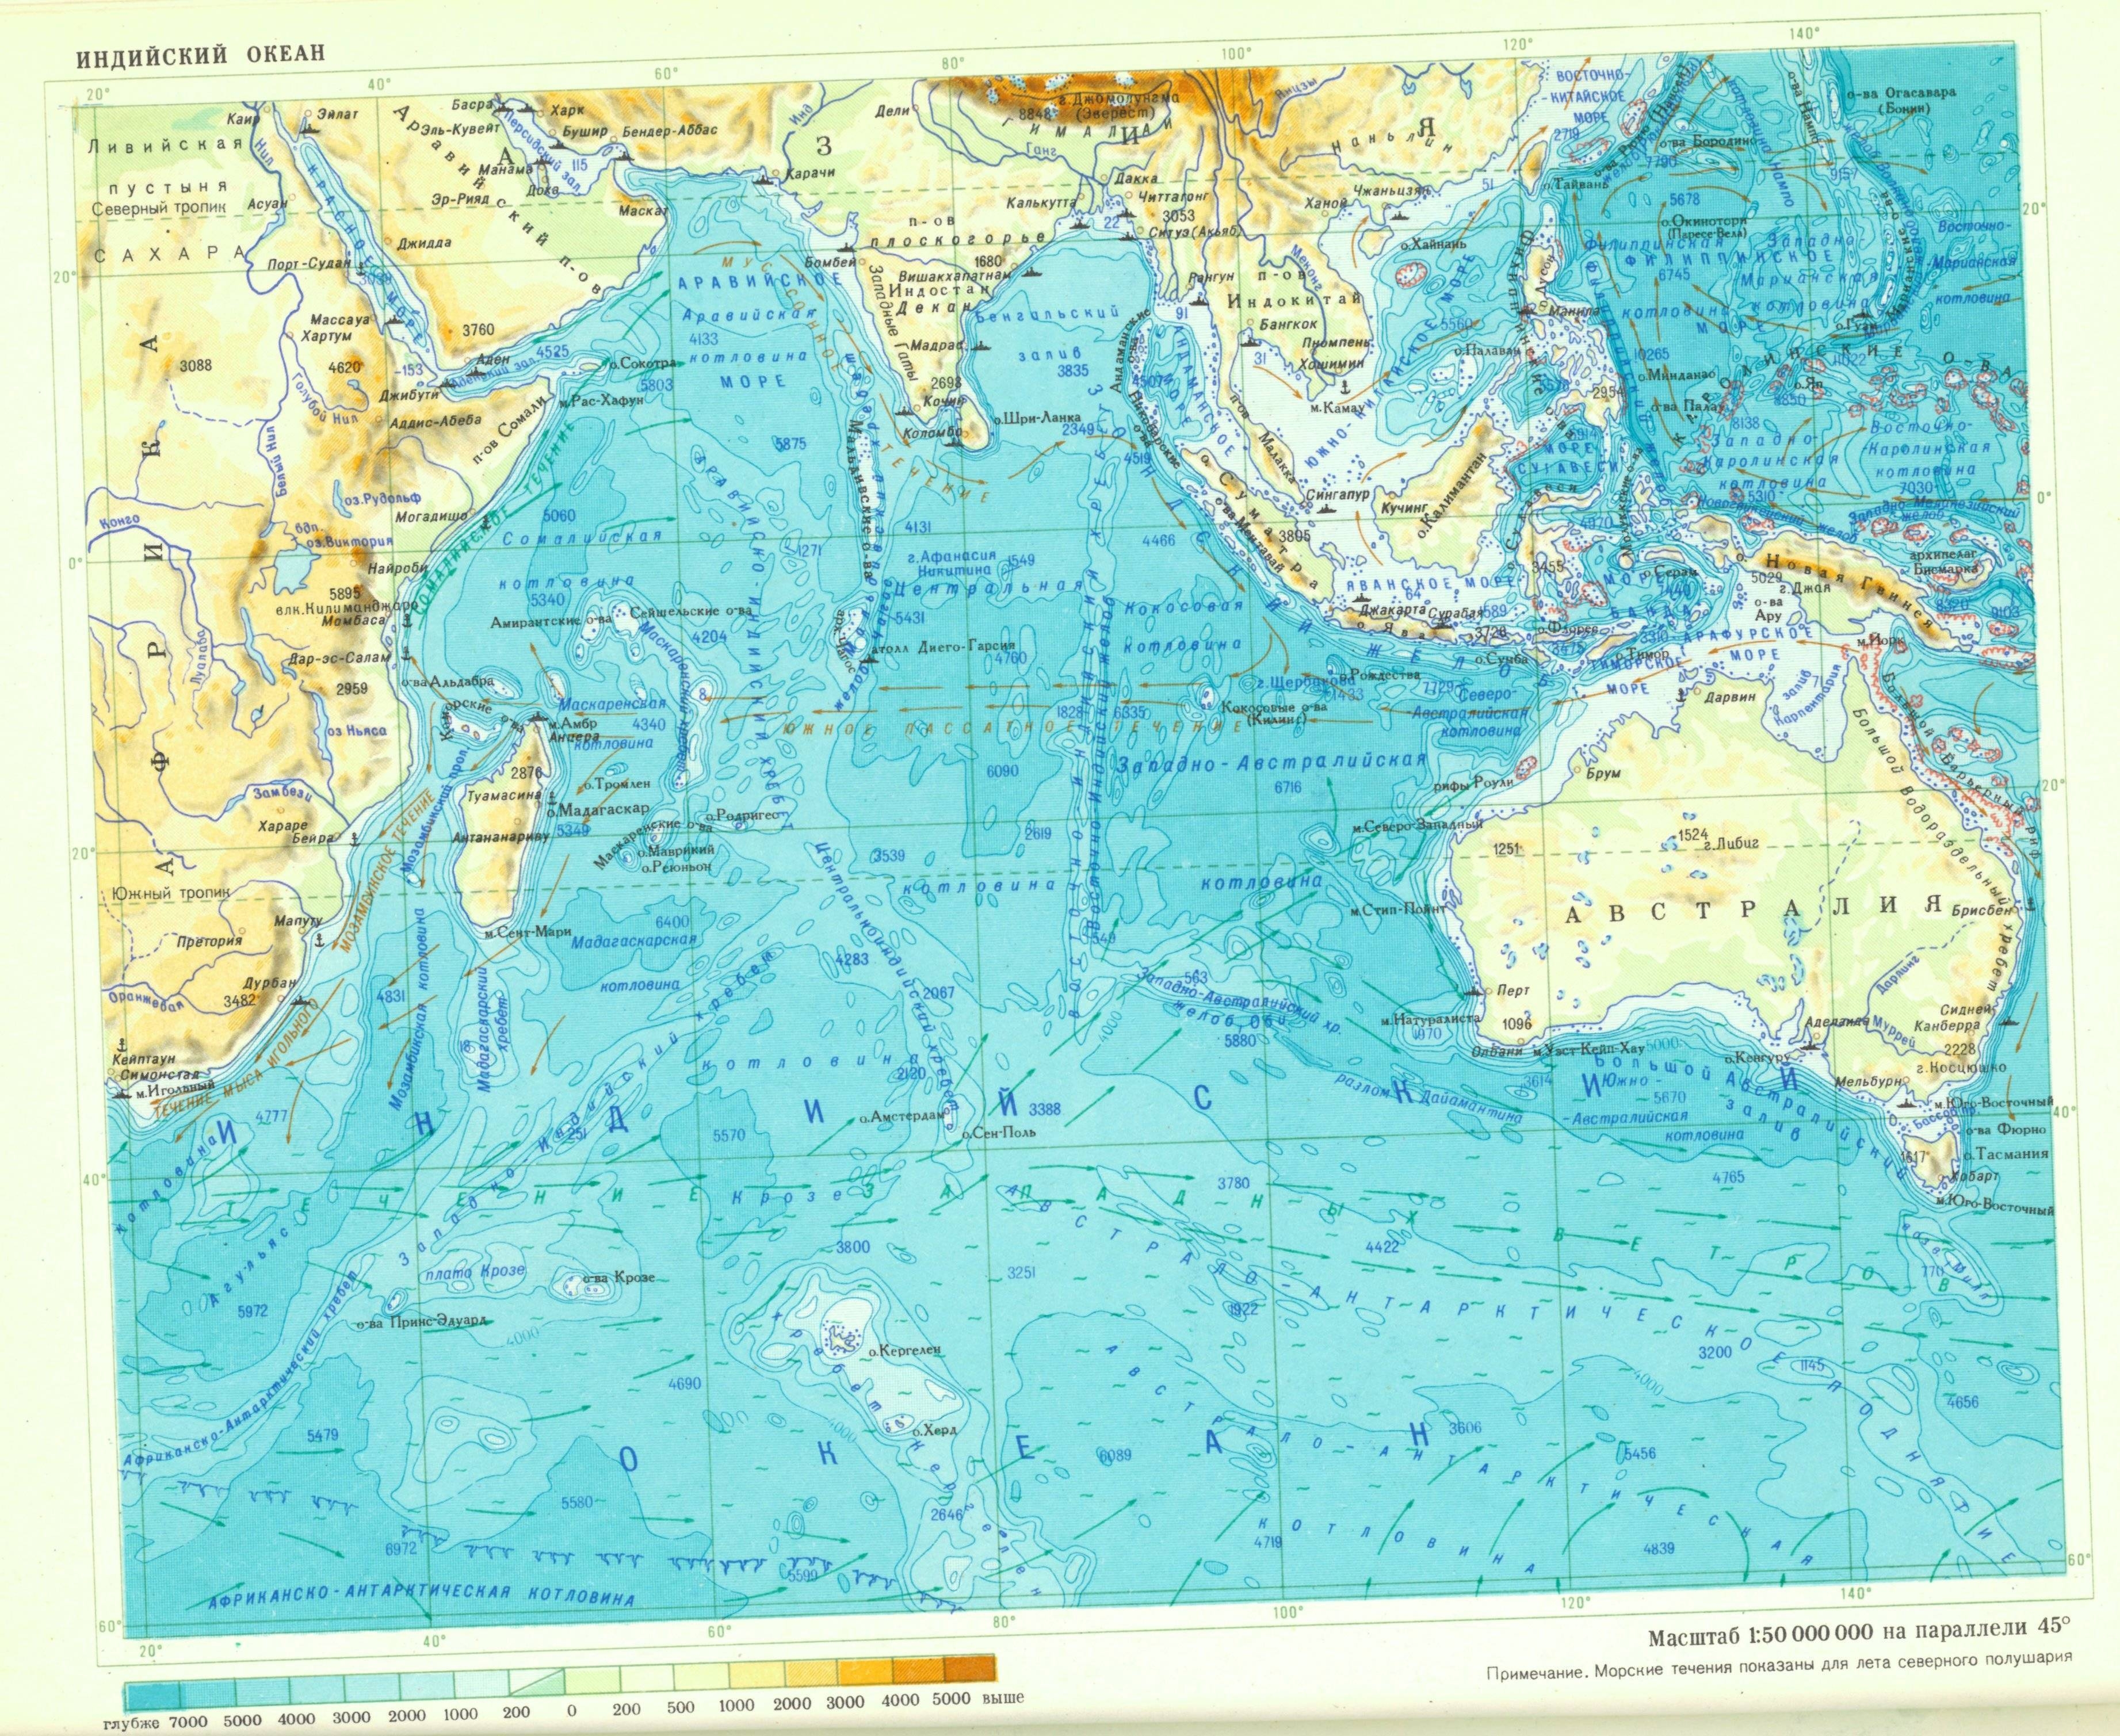 Крупные заливы индийского океана. Проливы Тихого океана на карте. Проливы индийского океана. Индийский океан карта подробная. Тихий океан физическая карта подробная.